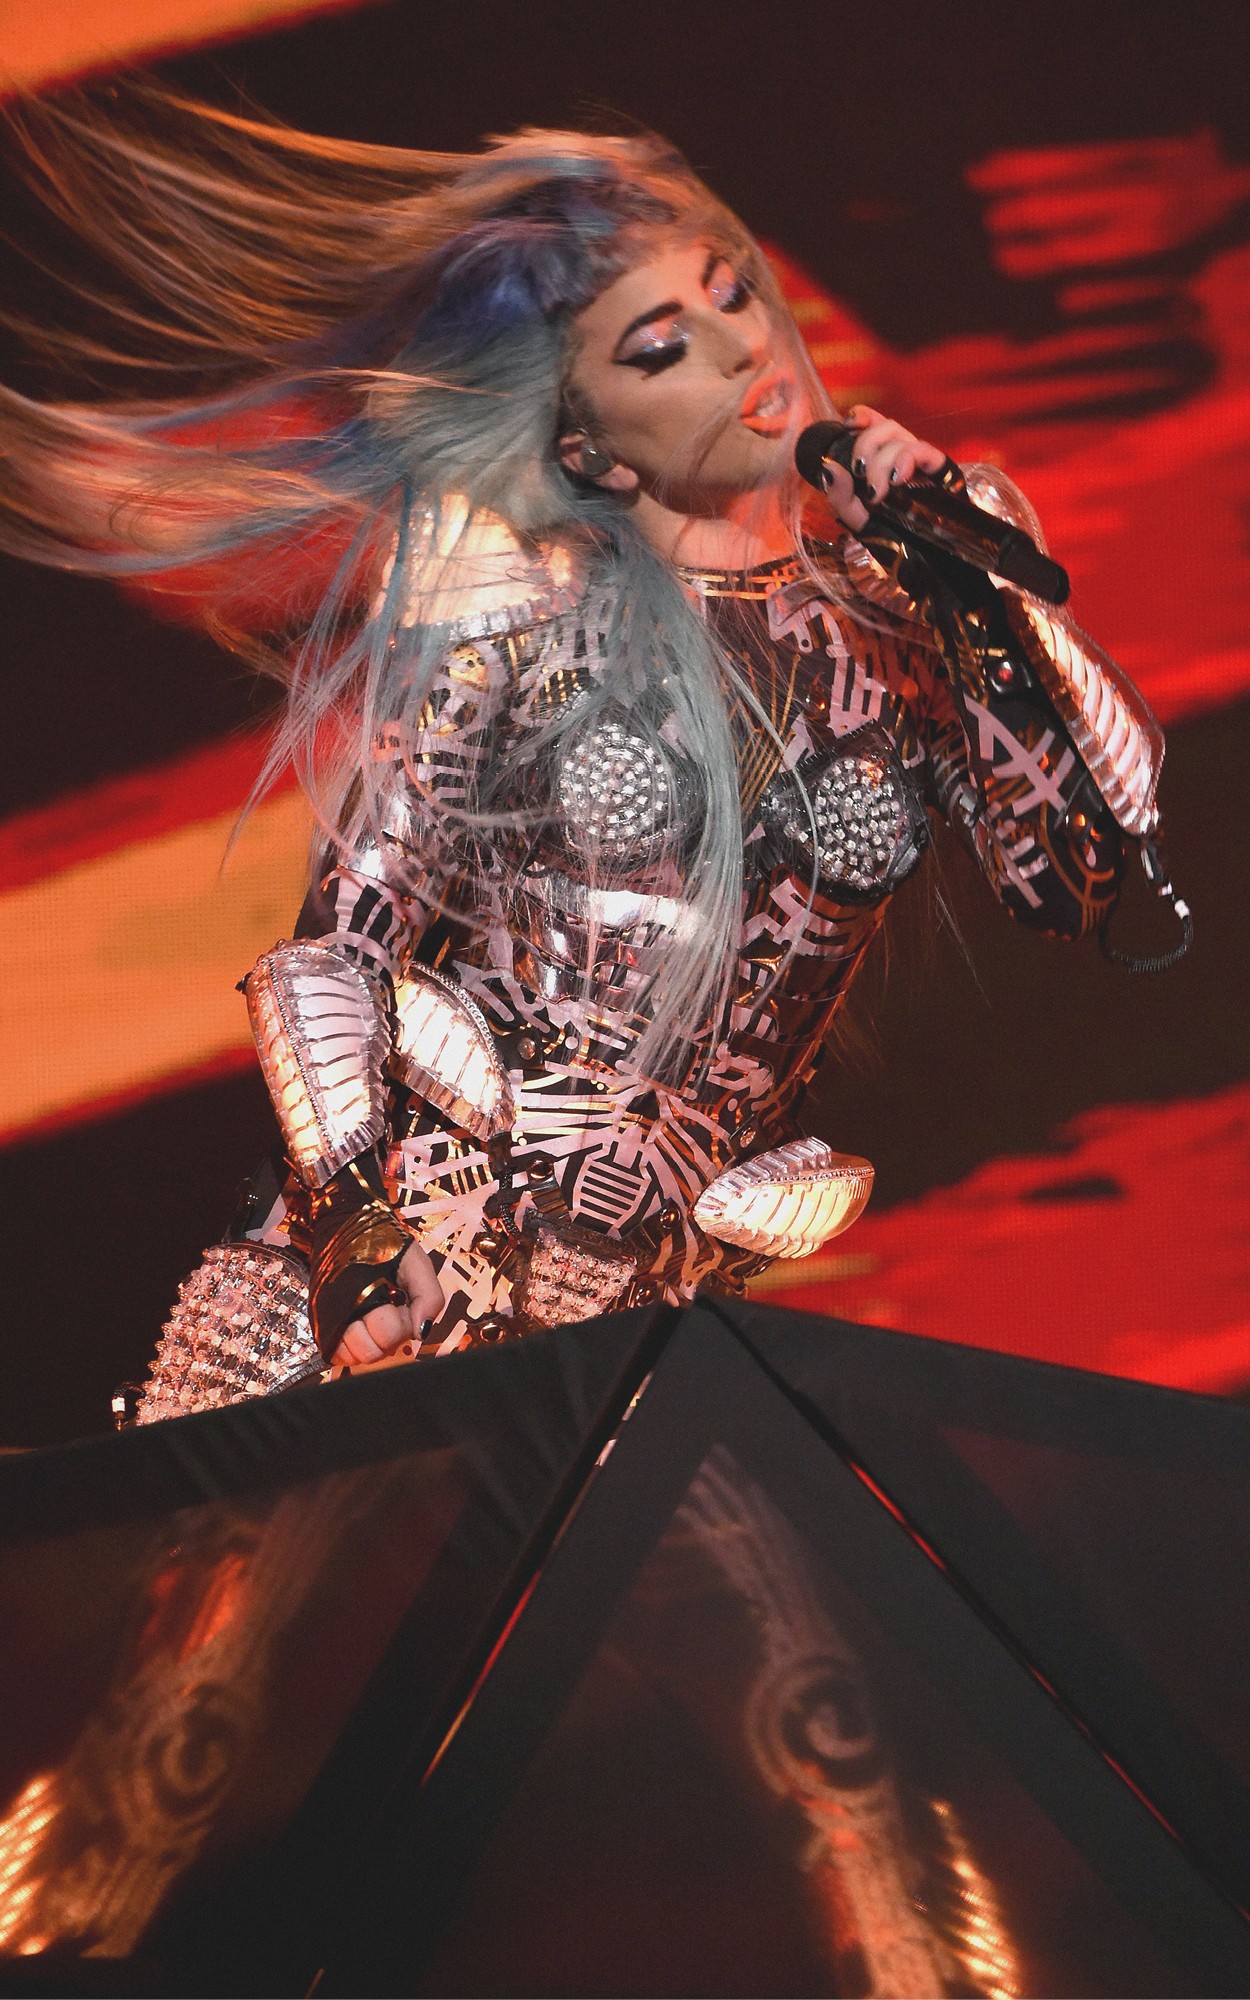 Джаз, роботы и неоновые корсеты: что творится на шоу Lady Gaga в Лас-Вегасе